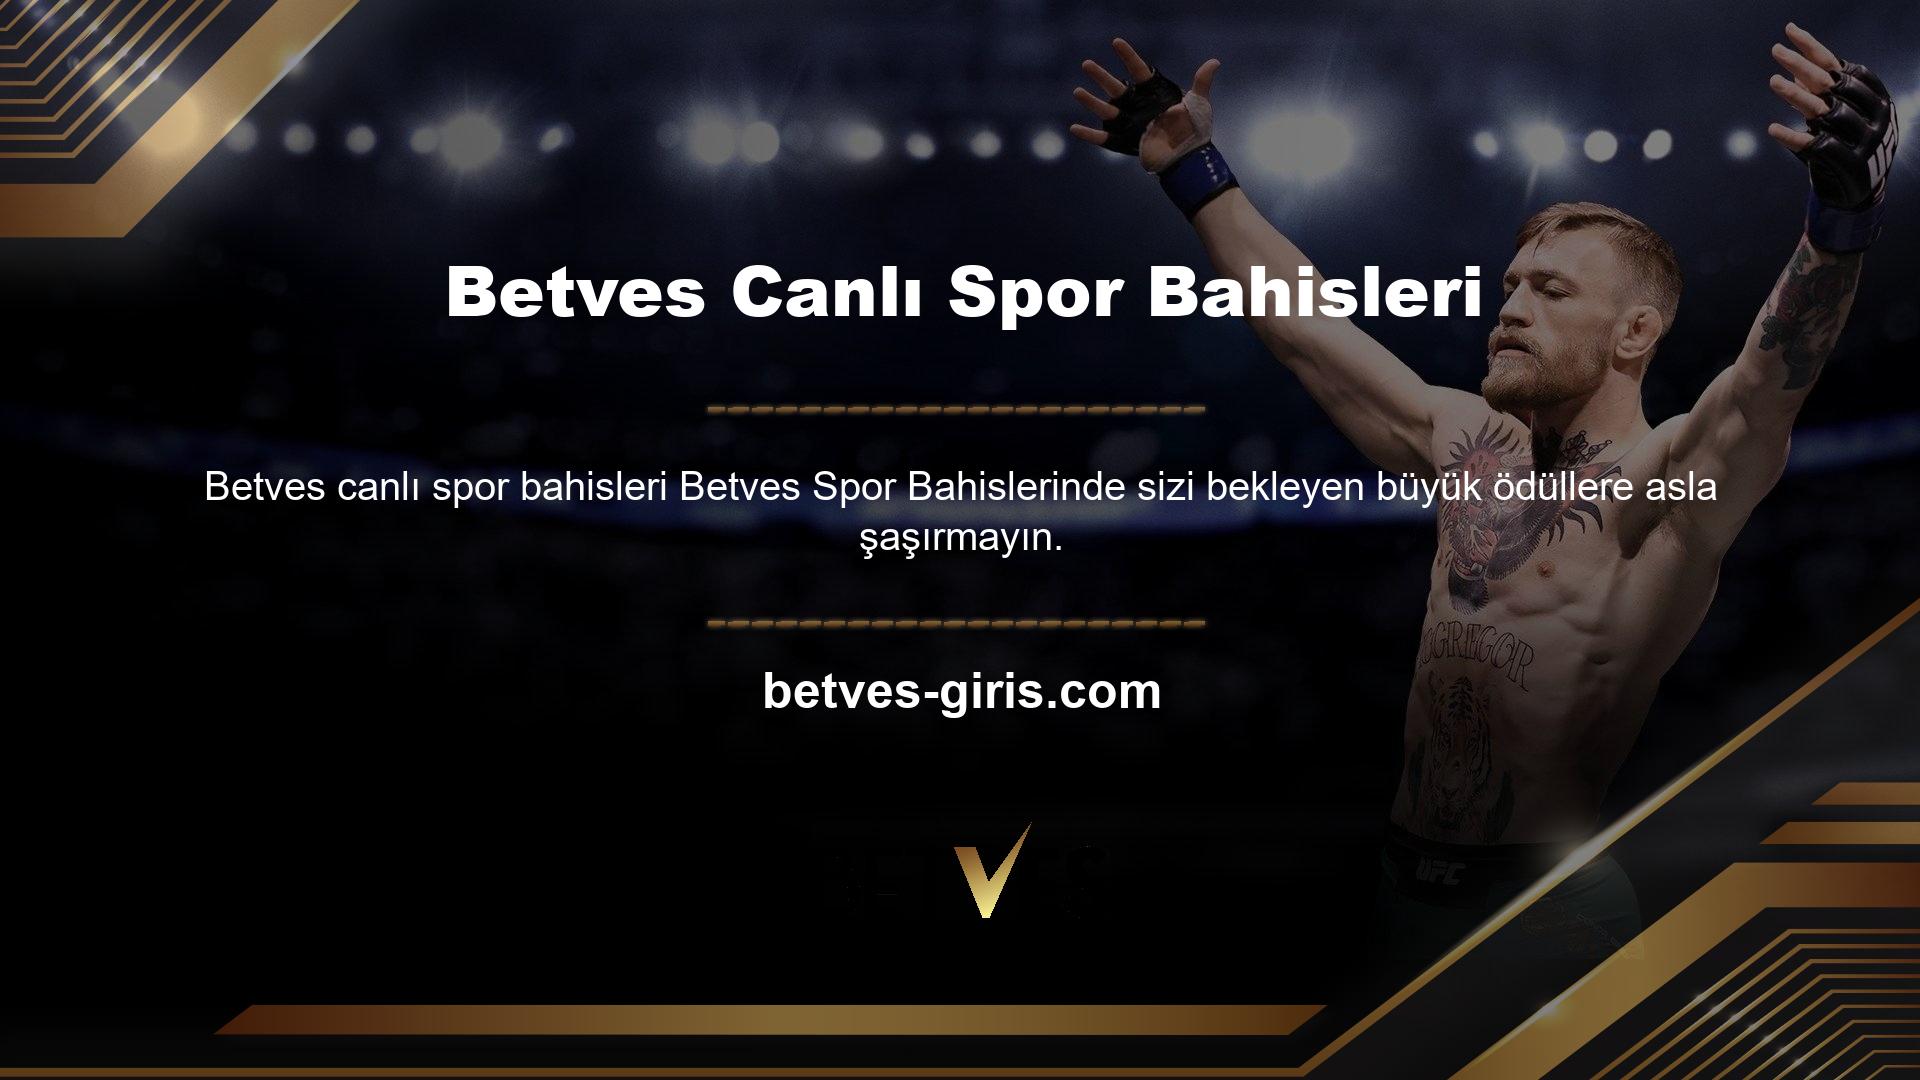 Türkiye'nin en sevilen takımları ve müsabakaları Dünya Ligi girişinde Betves bekliyor